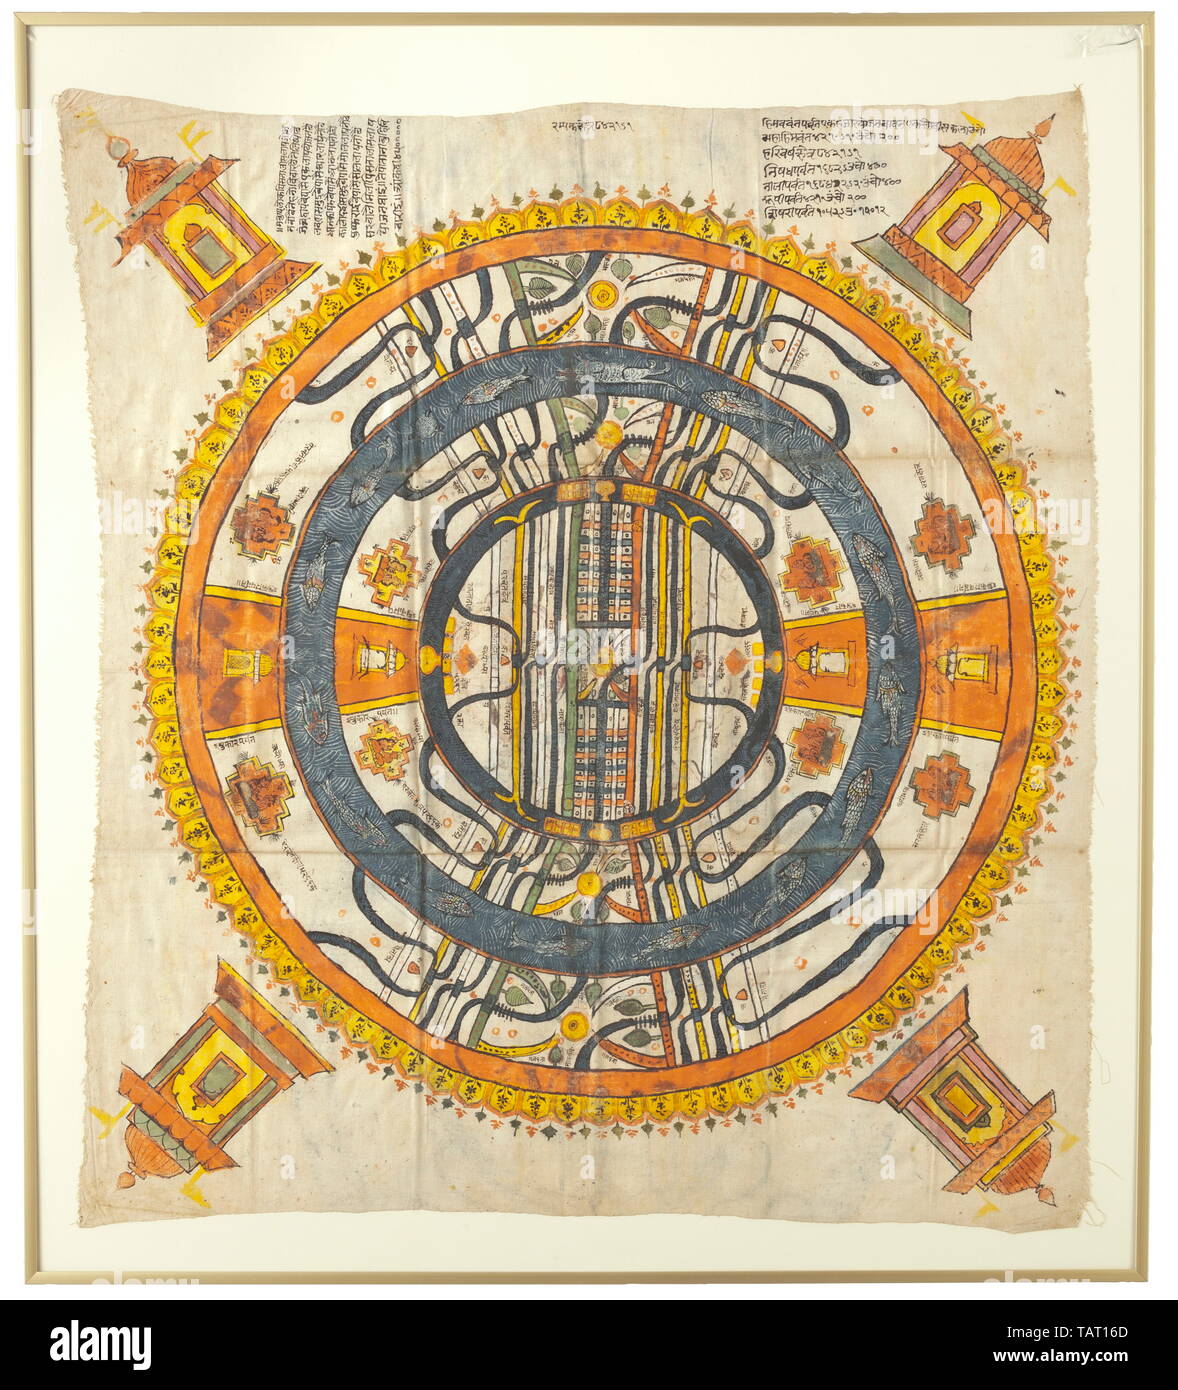 Représentation de la cosmologie Jain, Gujarat, 19e siècle, Gouache sur le coton. Représentation de richement colorées des "deux et demi de continents' (Adhaidvipa) avec le palais des quatre Tirthankaras dans chaque coin. Dans le centre et à la frontière du texte explicatif. Encadré et sous verre. Dimensions de tissu ca. 71 x 81 cm, châssis de 81 x 91 cm. Cf. Jan van Alphen, 2500 ans d'art et de la Religion Jain, Anvers (Etnografisch museum) 2000, pp. 117 - 120., 19ème siècle historique historique Additional-Rights Clearance-Info,--Not-Available Banque D'Images